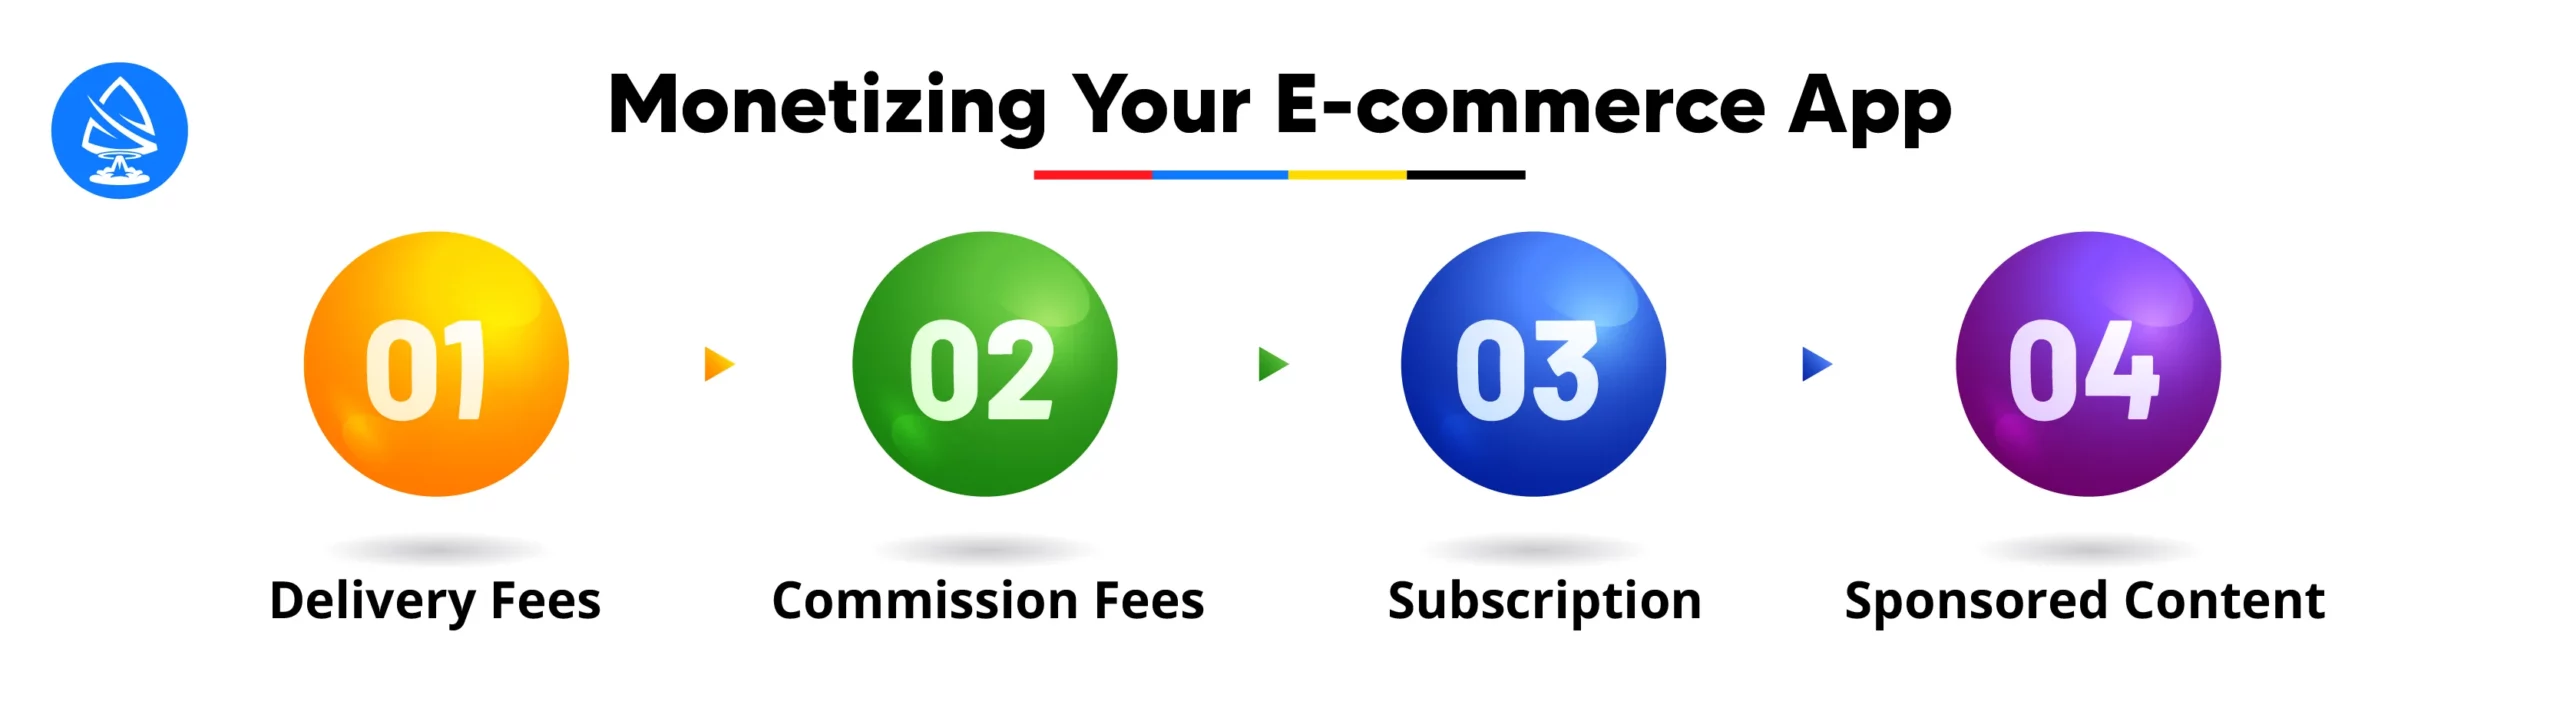 Monetizing Your E-commerce App